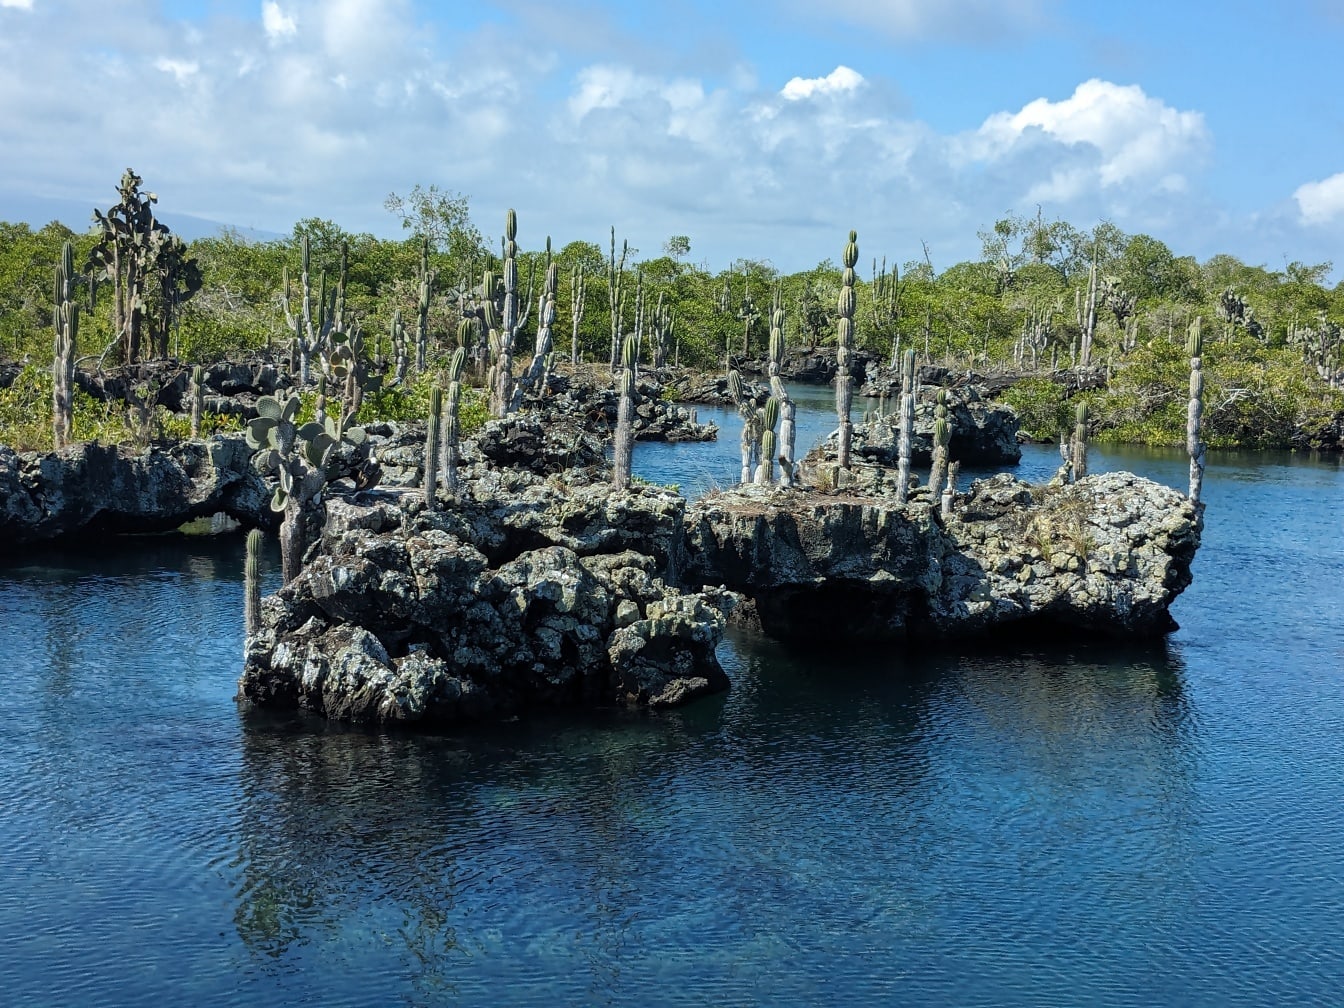 Peisaj costal din Galapagos cu cactuși pe insule stâncoase în apă